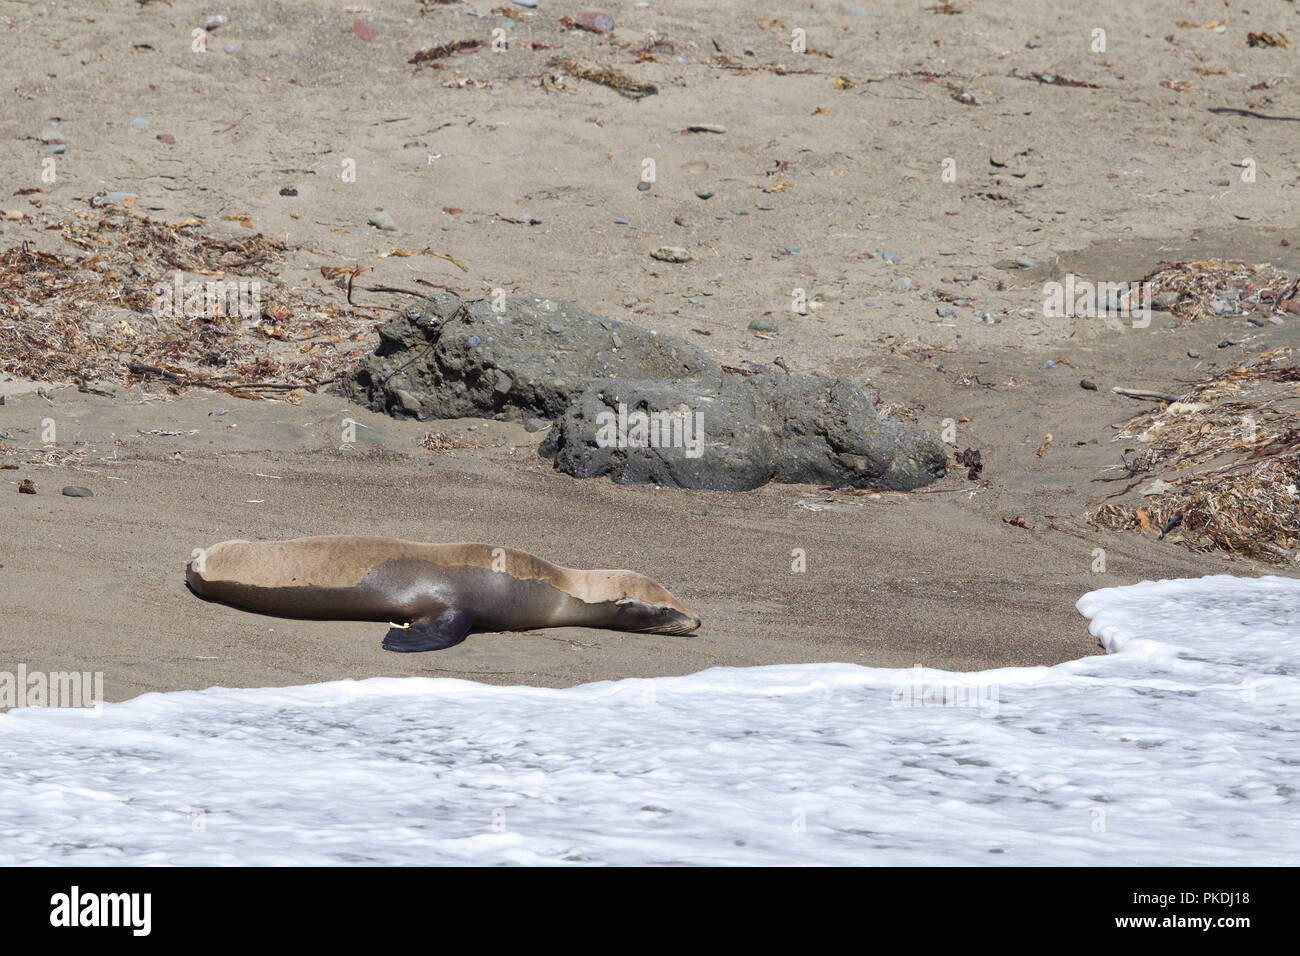 Le lion de mer de malades en attente d'une équipe de sauvetage de mammifères marins Banque D'Images